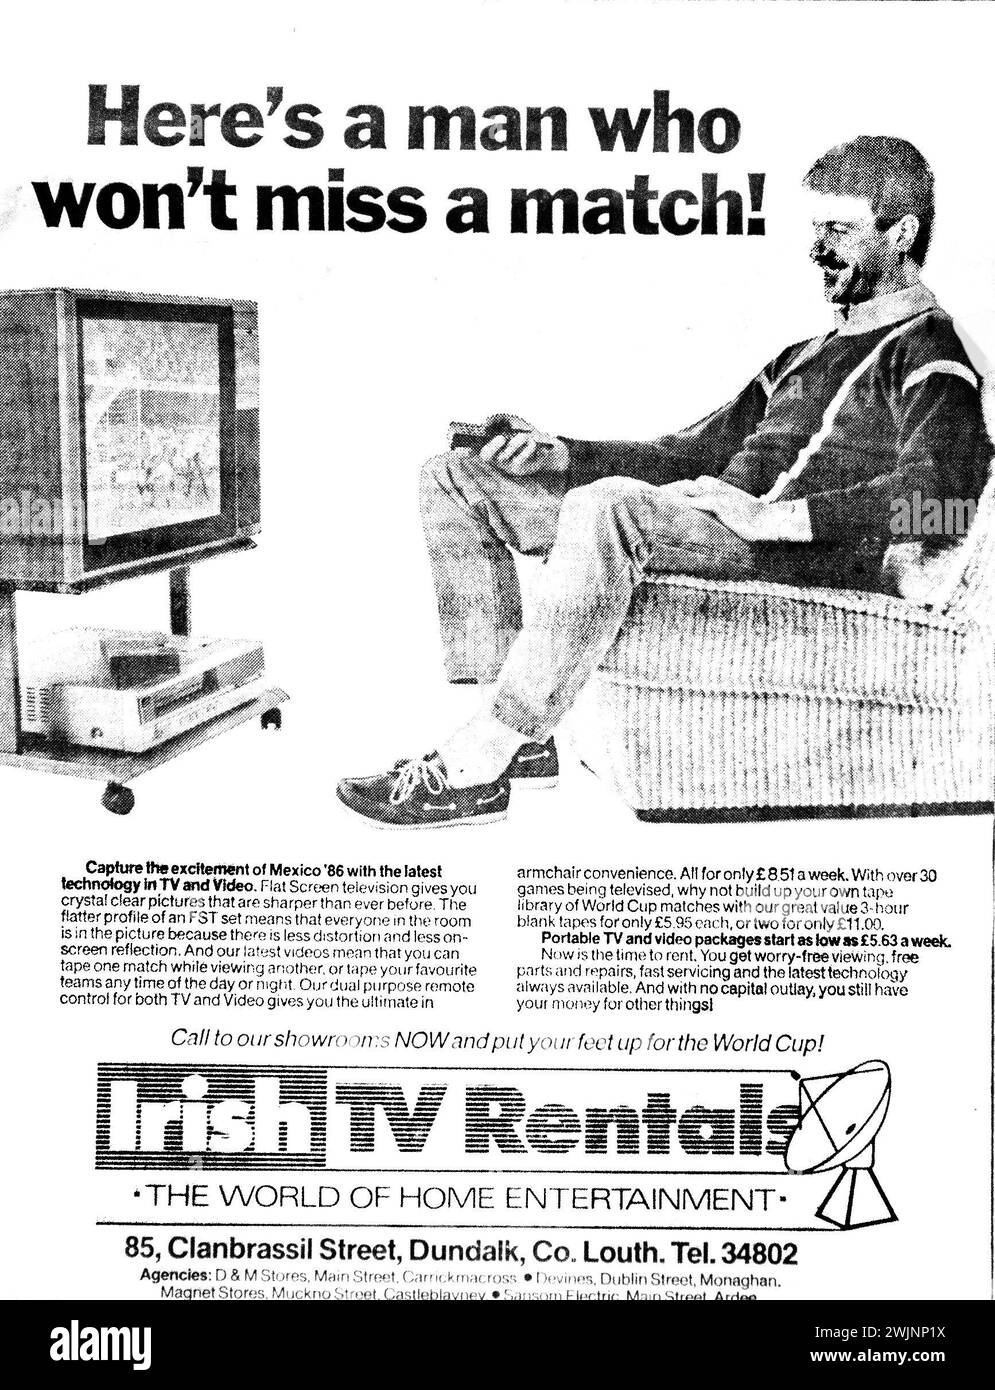 1986 Werbung für Irish TV Rentals, Dundalk, Irland. Die Bilder zeigen eine Ära, in der die Menschen ihren Fernseher und Videorecorder wöchentlich/monatlich mieteten. Die Werbung wurde angeprangert, um die Menschen zu ermutigen, für die bevorstehenden WM-Finalspiele in Mexiko zu mieten. Stockfoto